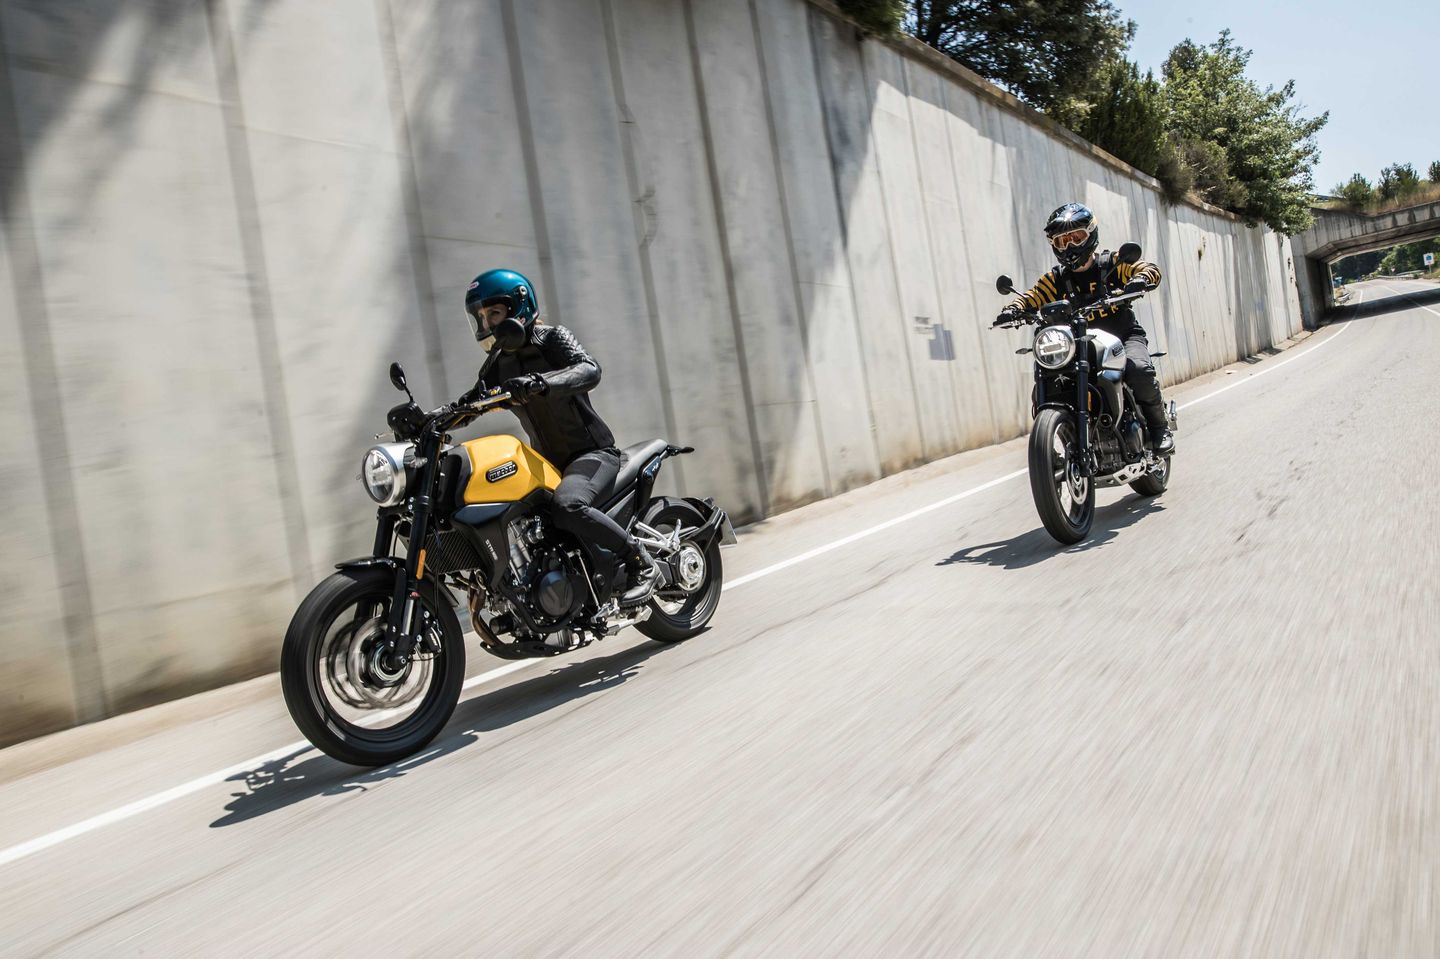 Dos motocicletas Macbor Eight Mile 500 en movimiento, elegancia y estilo retro.